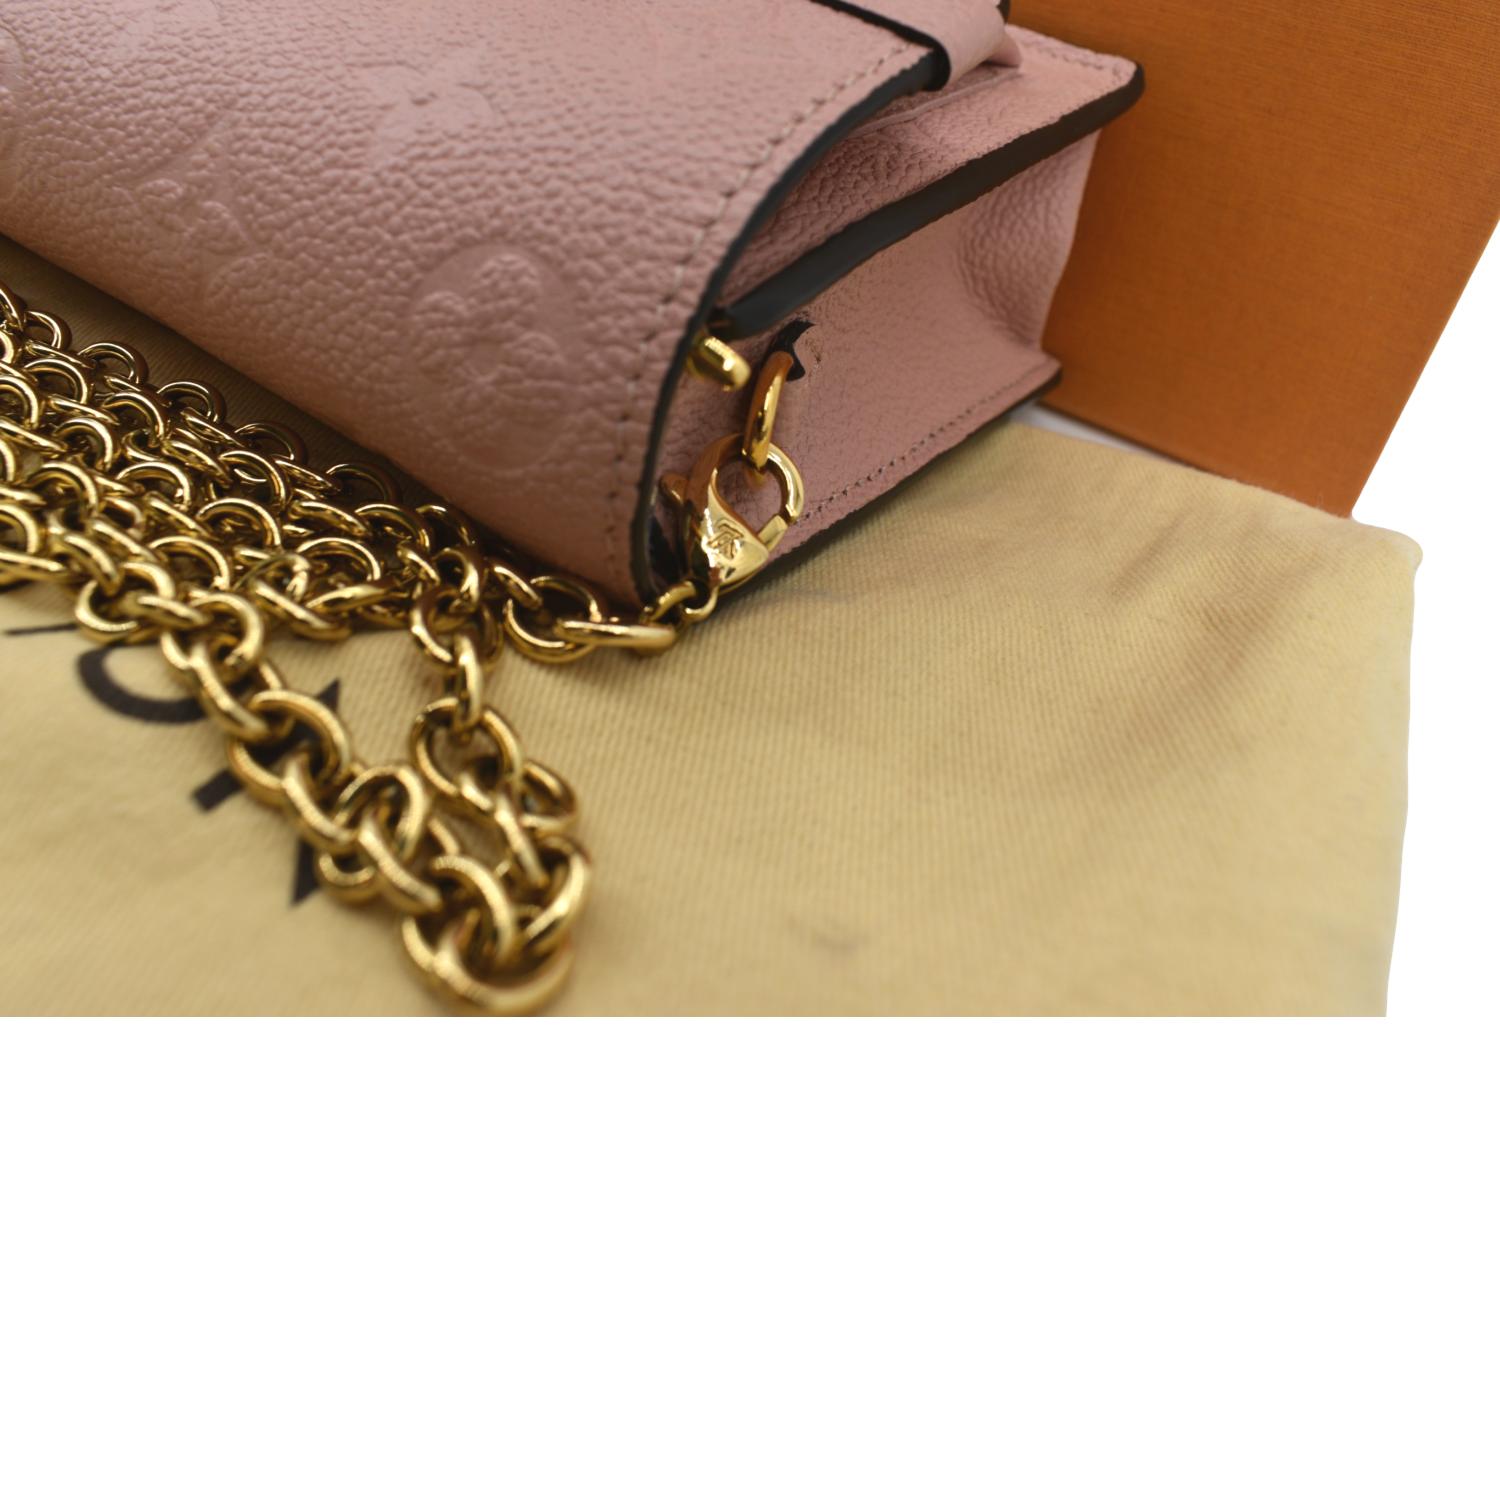 Shop Louis Vuitton Vavin chain wallet (PORTEFEUILLE CHAINE VAVIN, M67839,  VAVIN CHAIN WALLET, M69423) by Mikrie